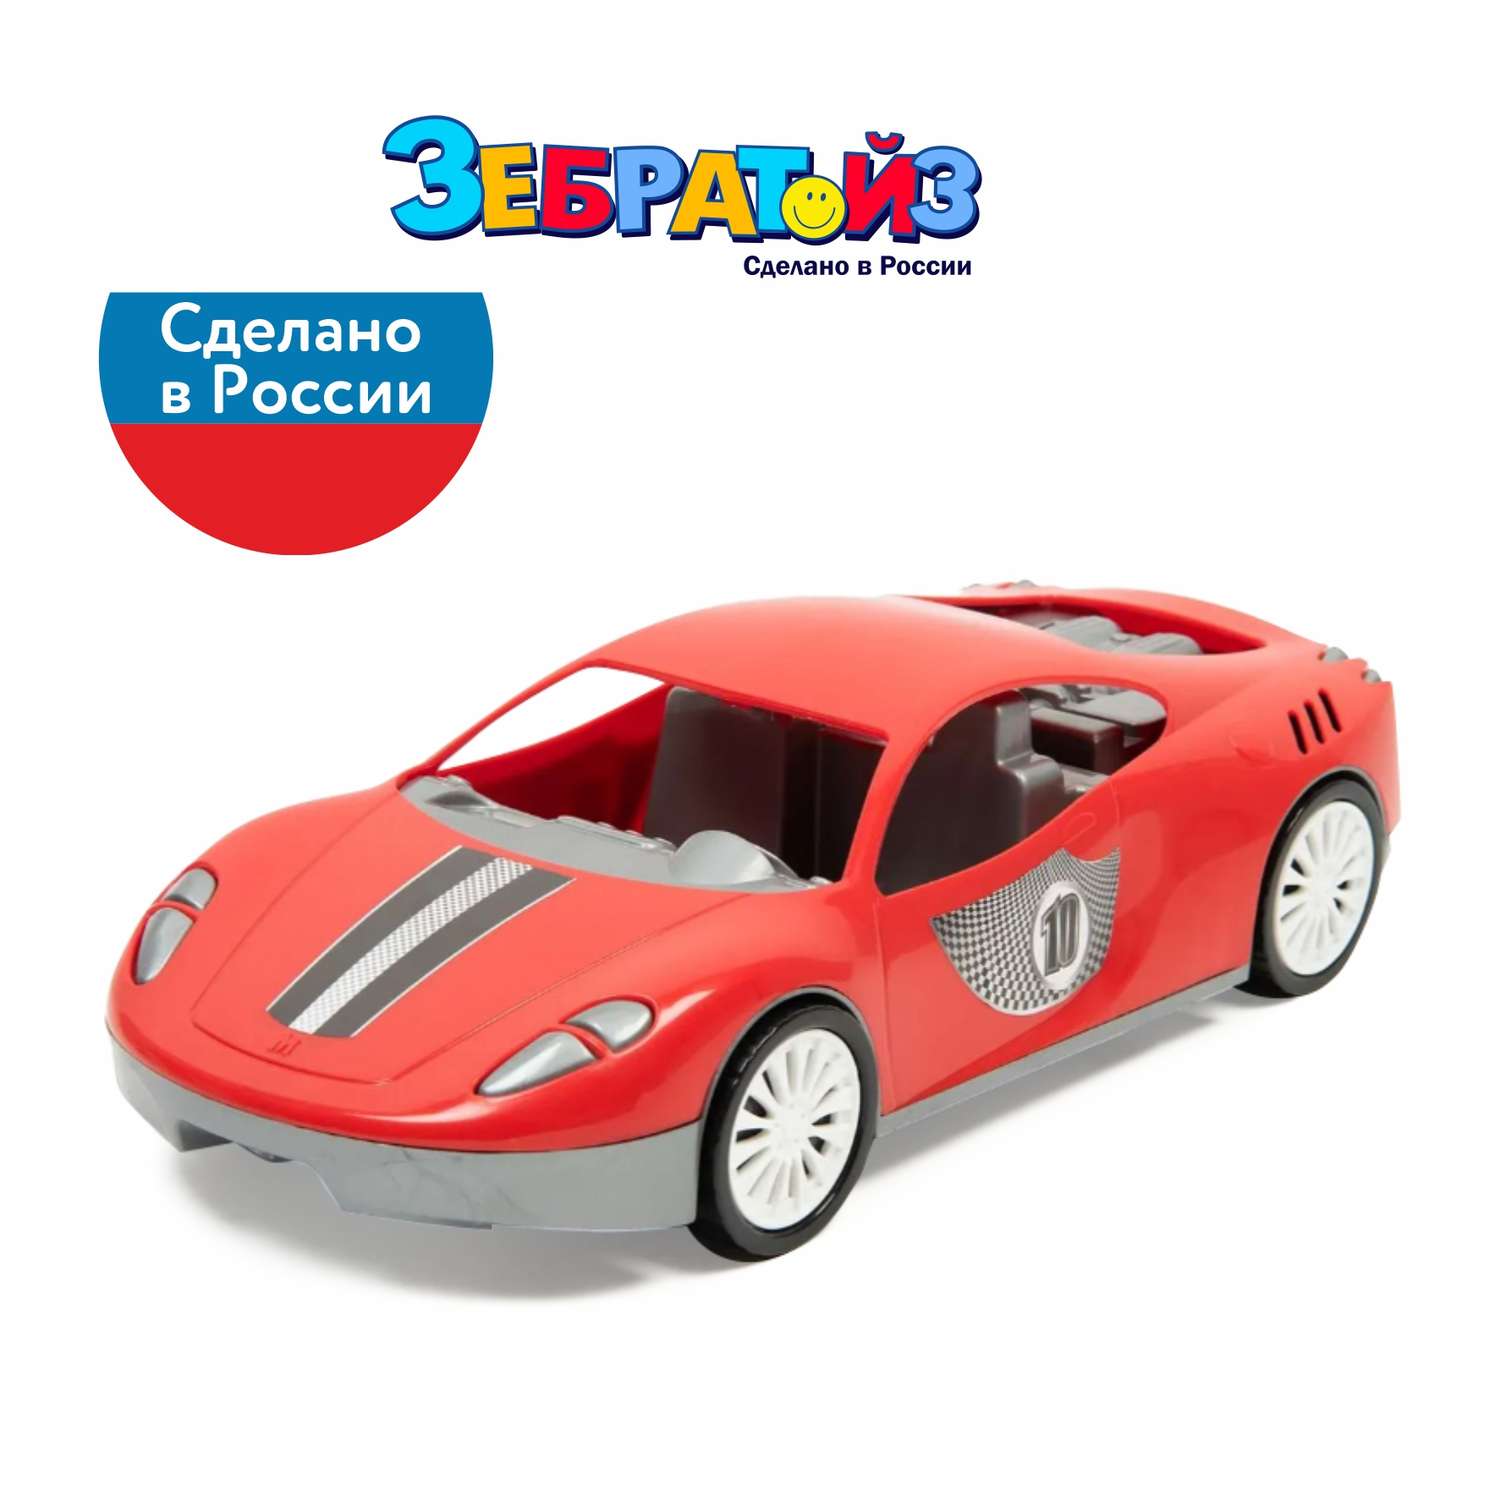 Автомобиль Zebratoys Спортивный Красный 15-11160 - фото 7